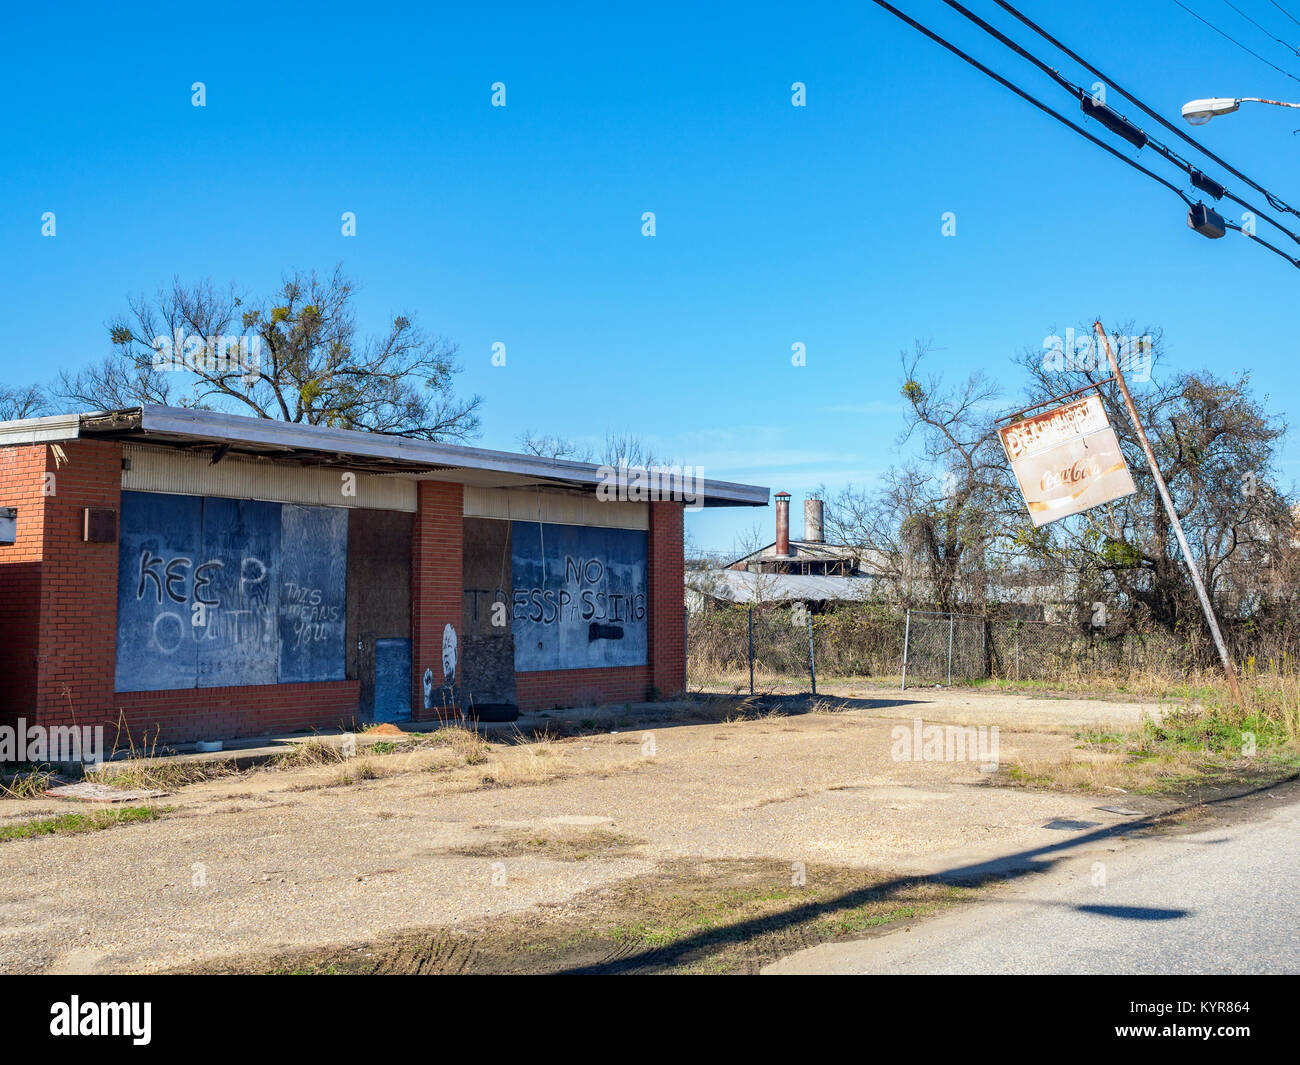 Vieux barricadés et petite entreprise à éclipses, montrant le déclin urbain à Montgomery, Alabama, United States. Banque D'Images